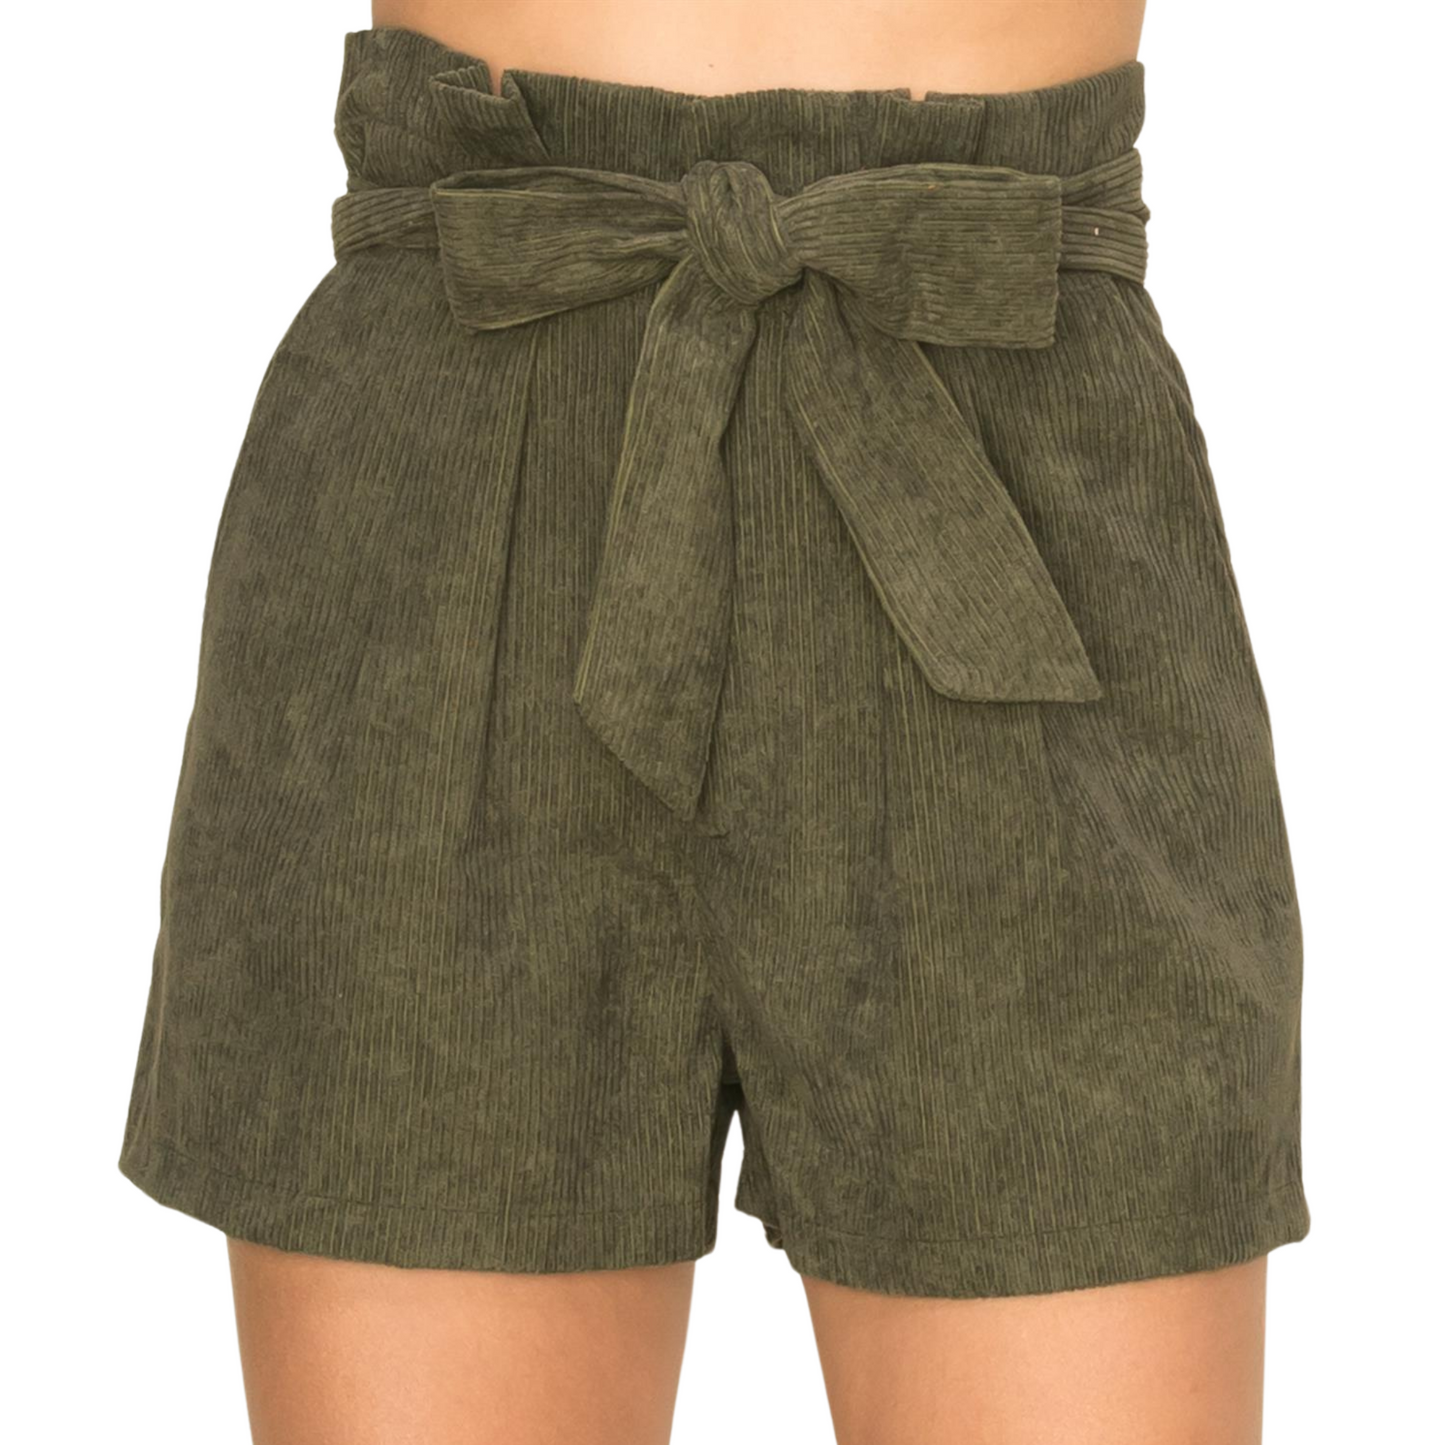 Hyfve Corduroy Belted Soft Shorts Mauve or Olive (S-L)